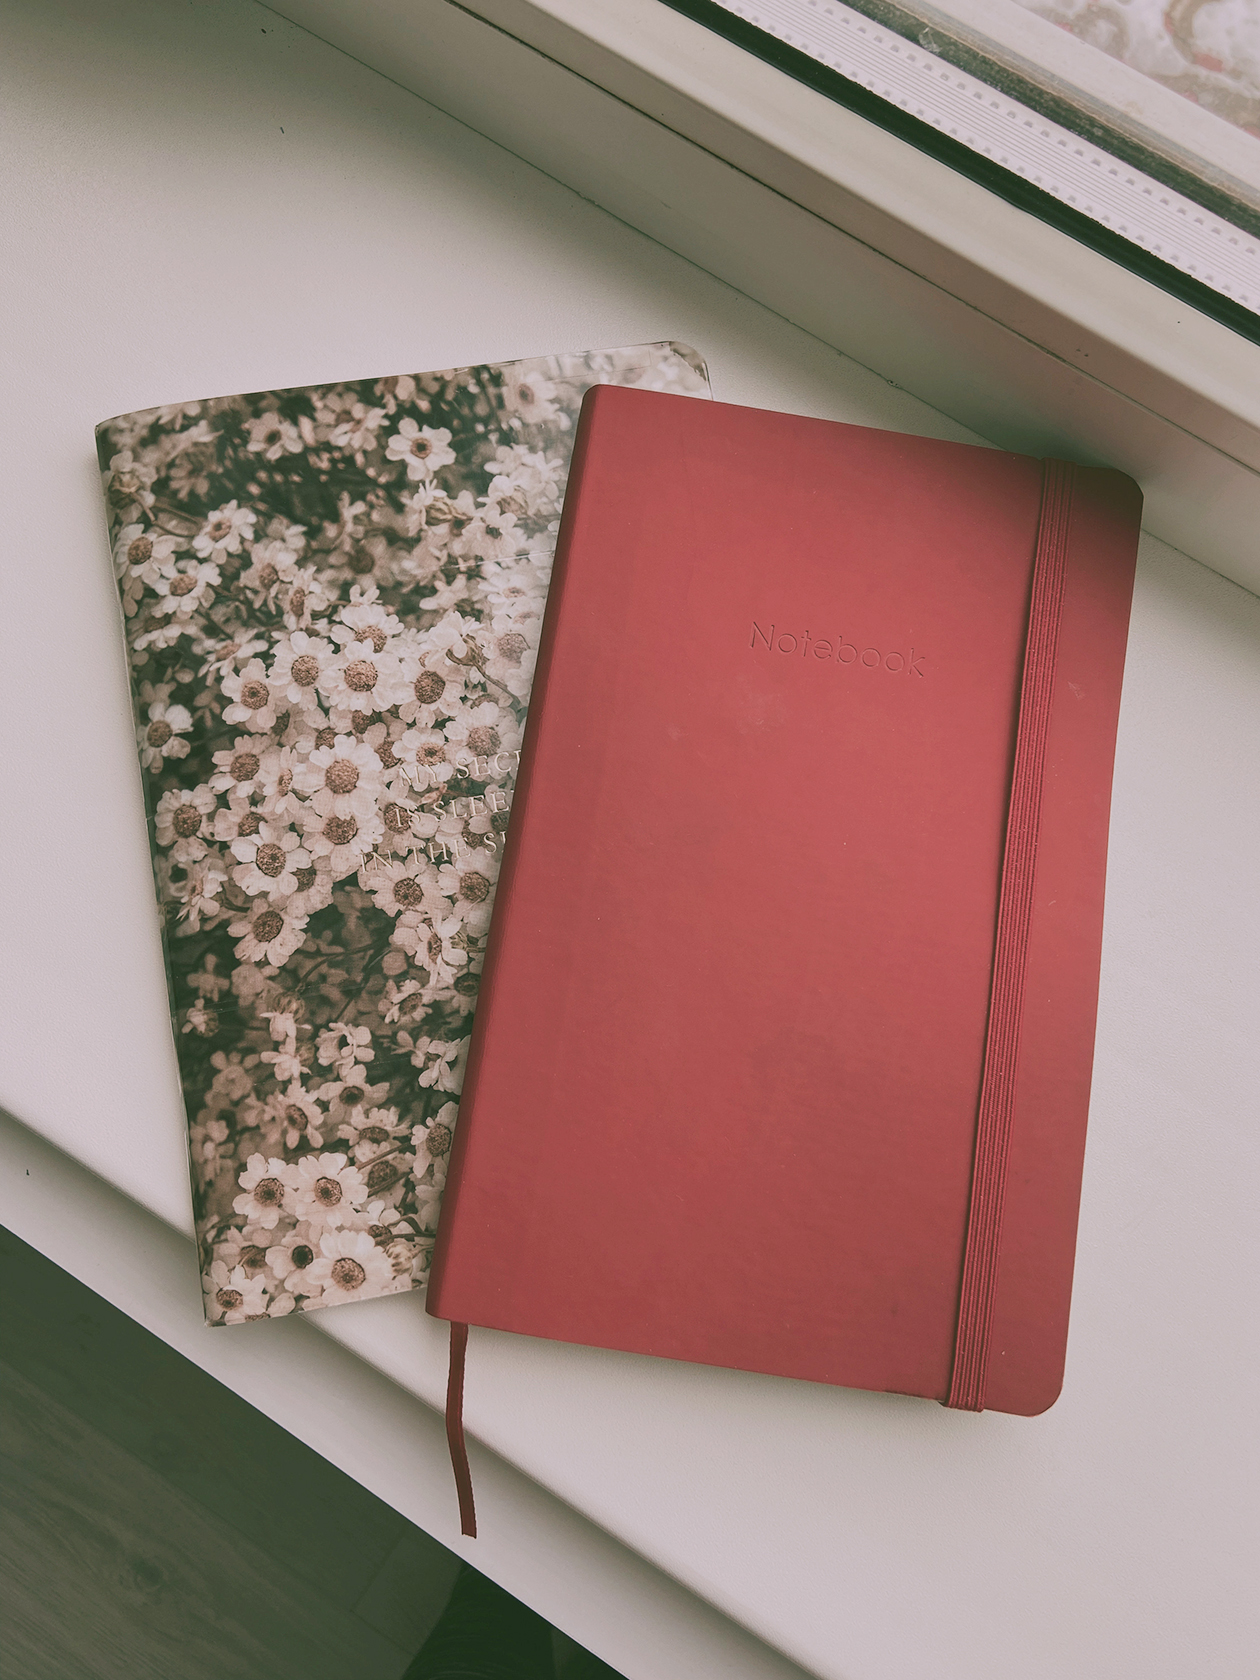 Так выглядит мой терапевтический дневник. Он может быть любого формата — блокнот или толстая тетрадь, но важно, чтобы нравилось в него писать